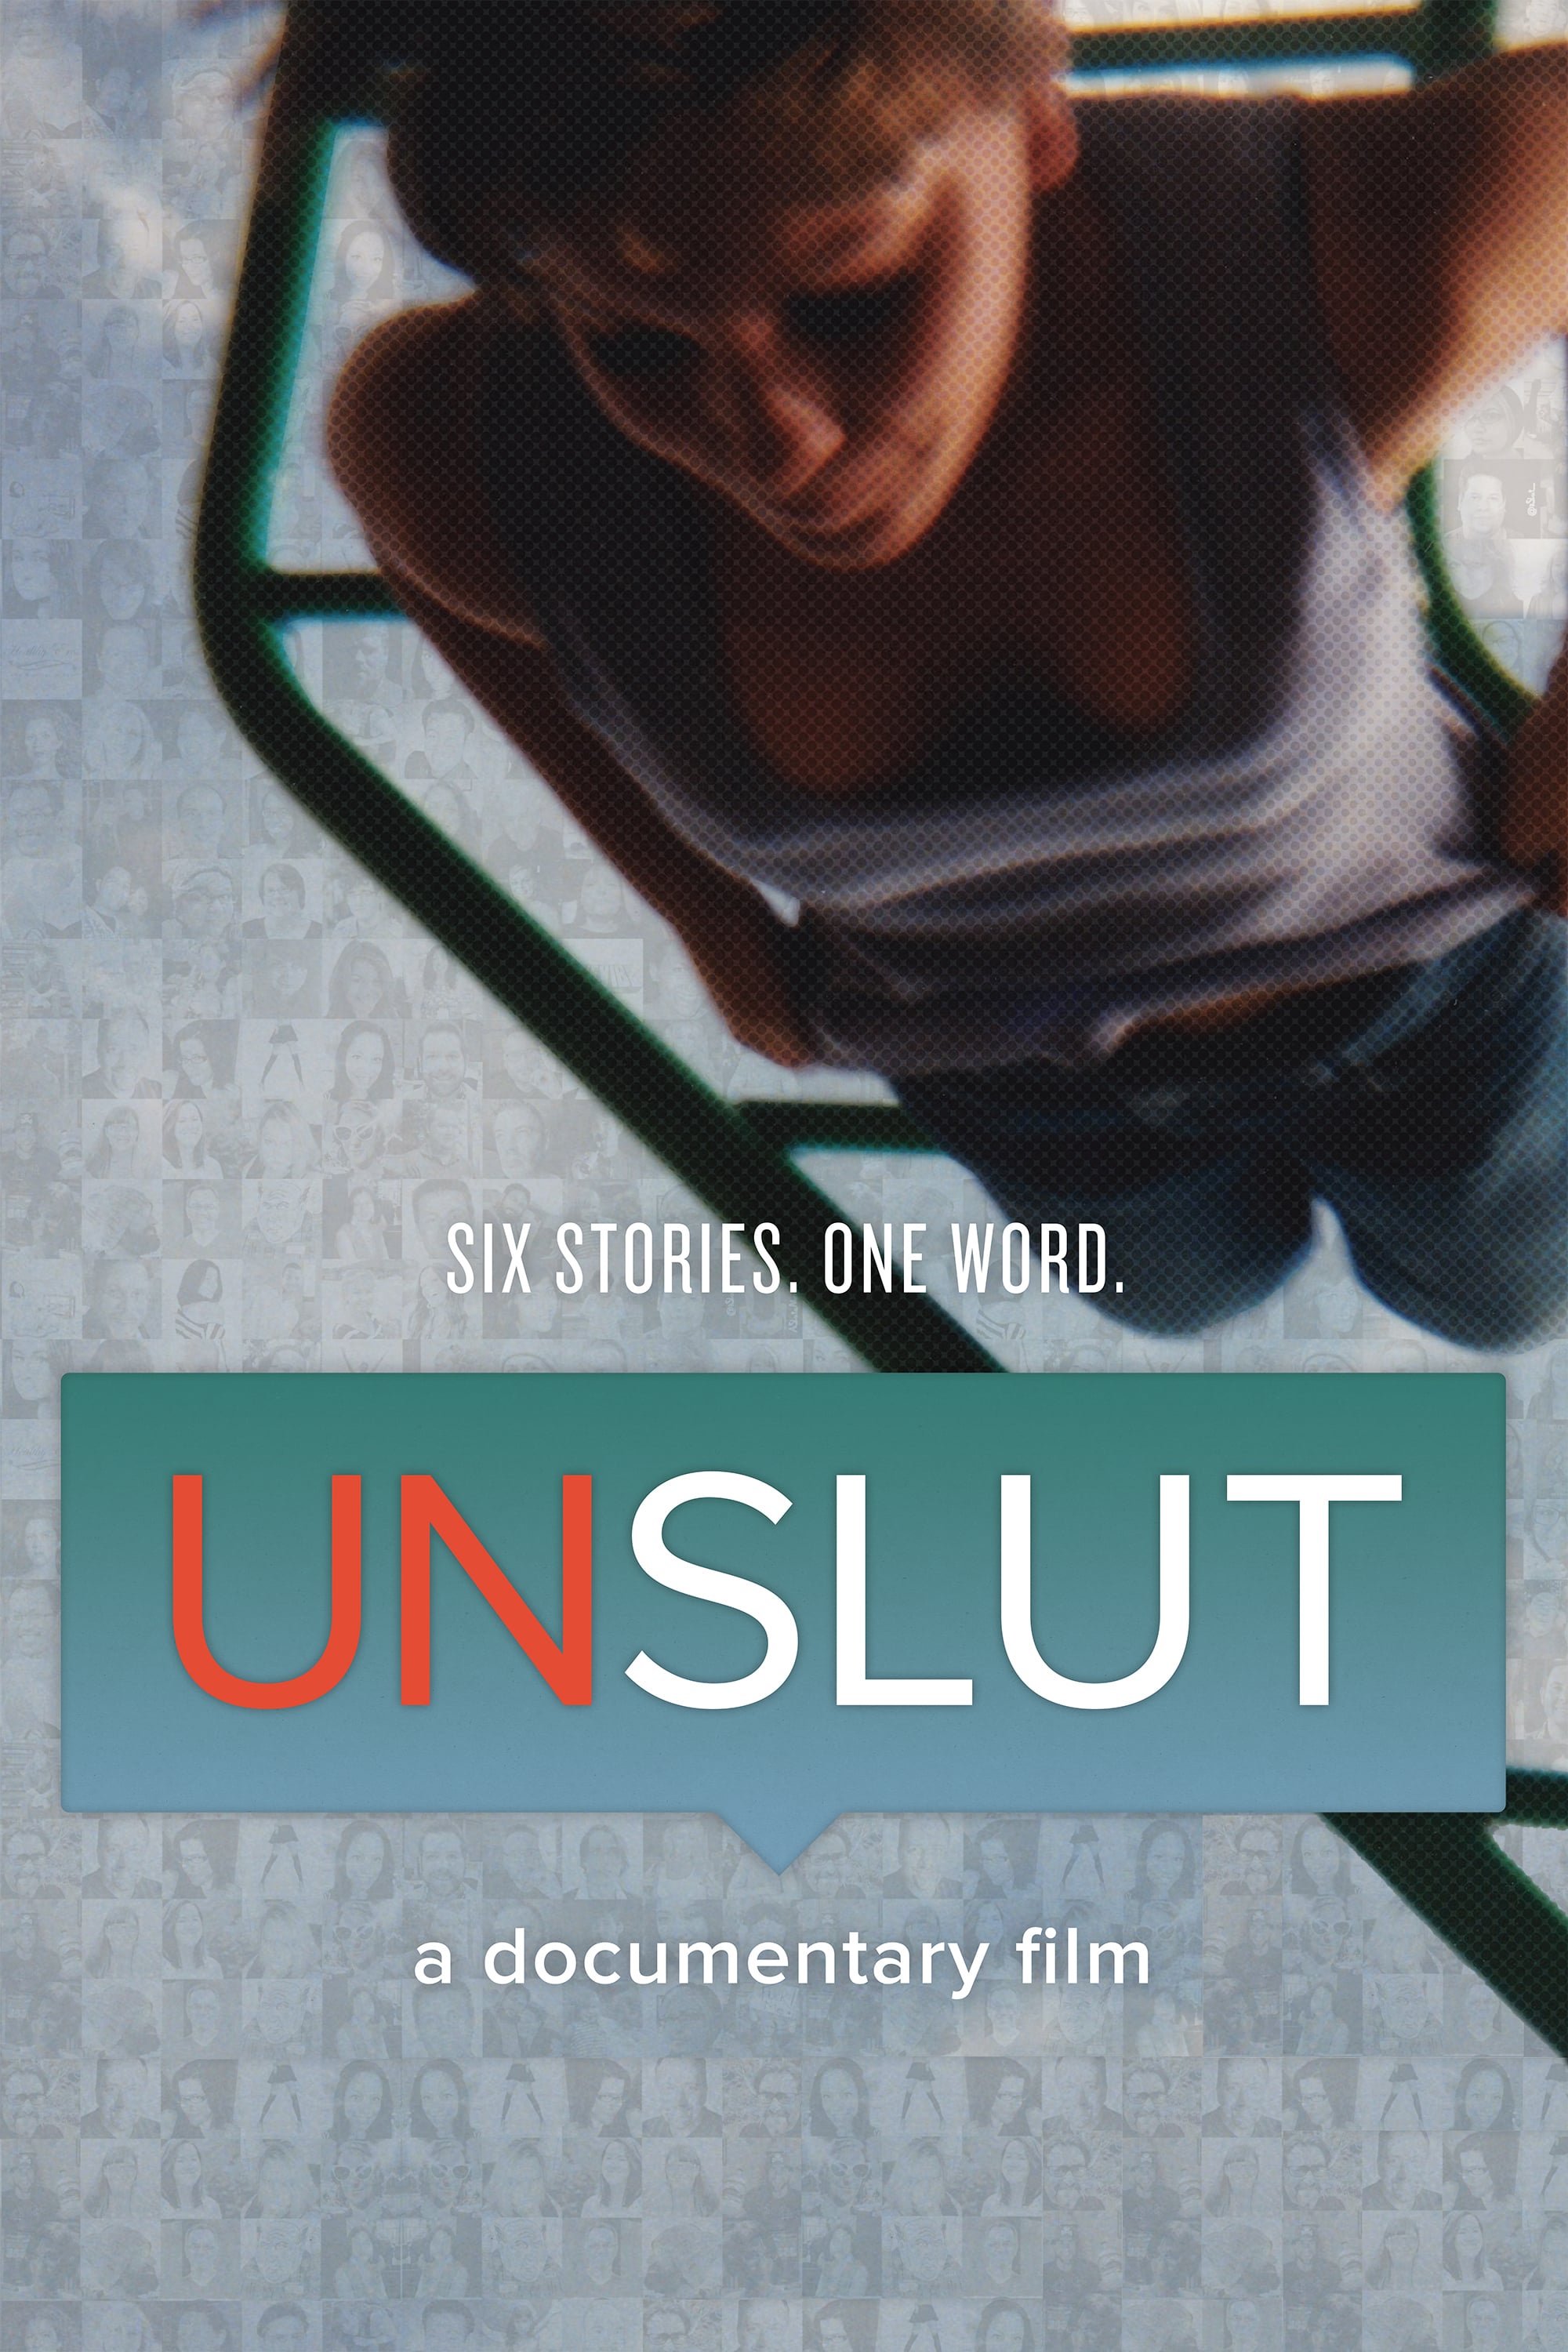 UnSlut: A Documentary Film